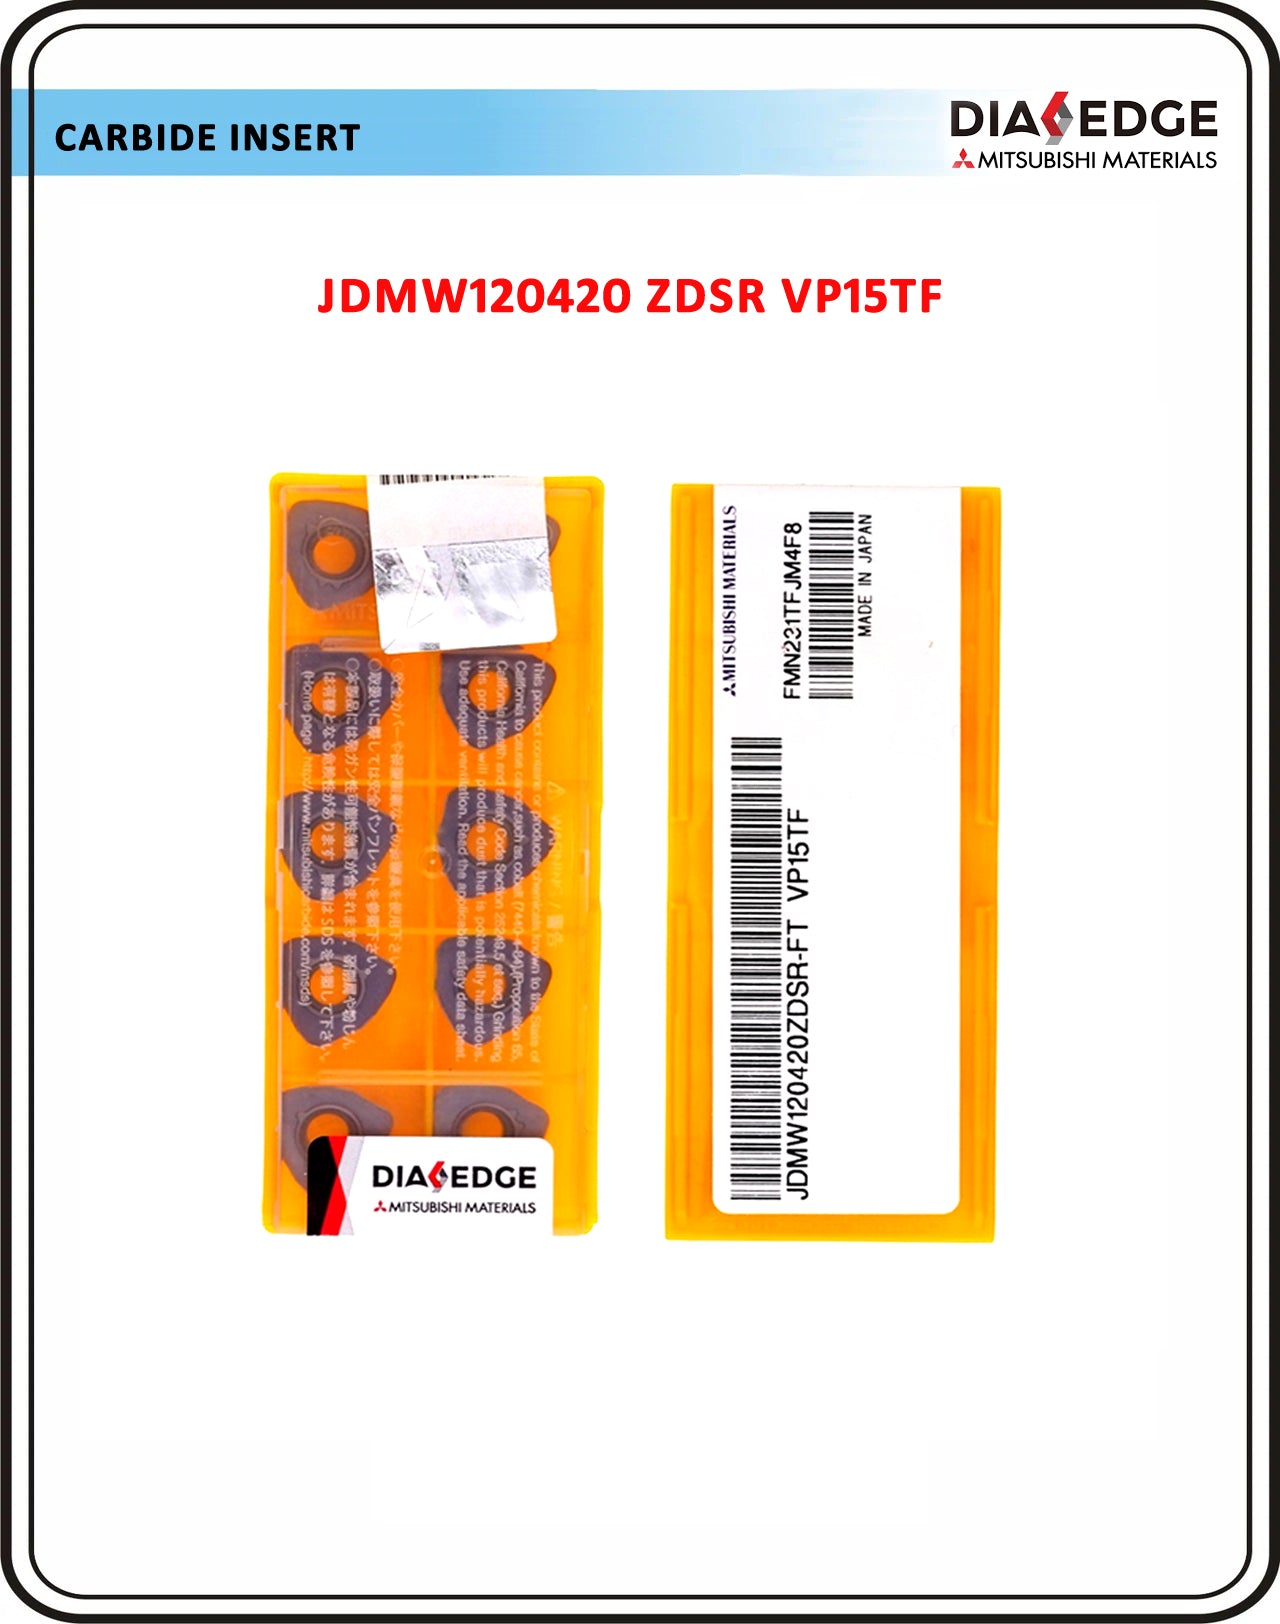 Mitsubishi insert JDMW120420 ZDSR VP15TF